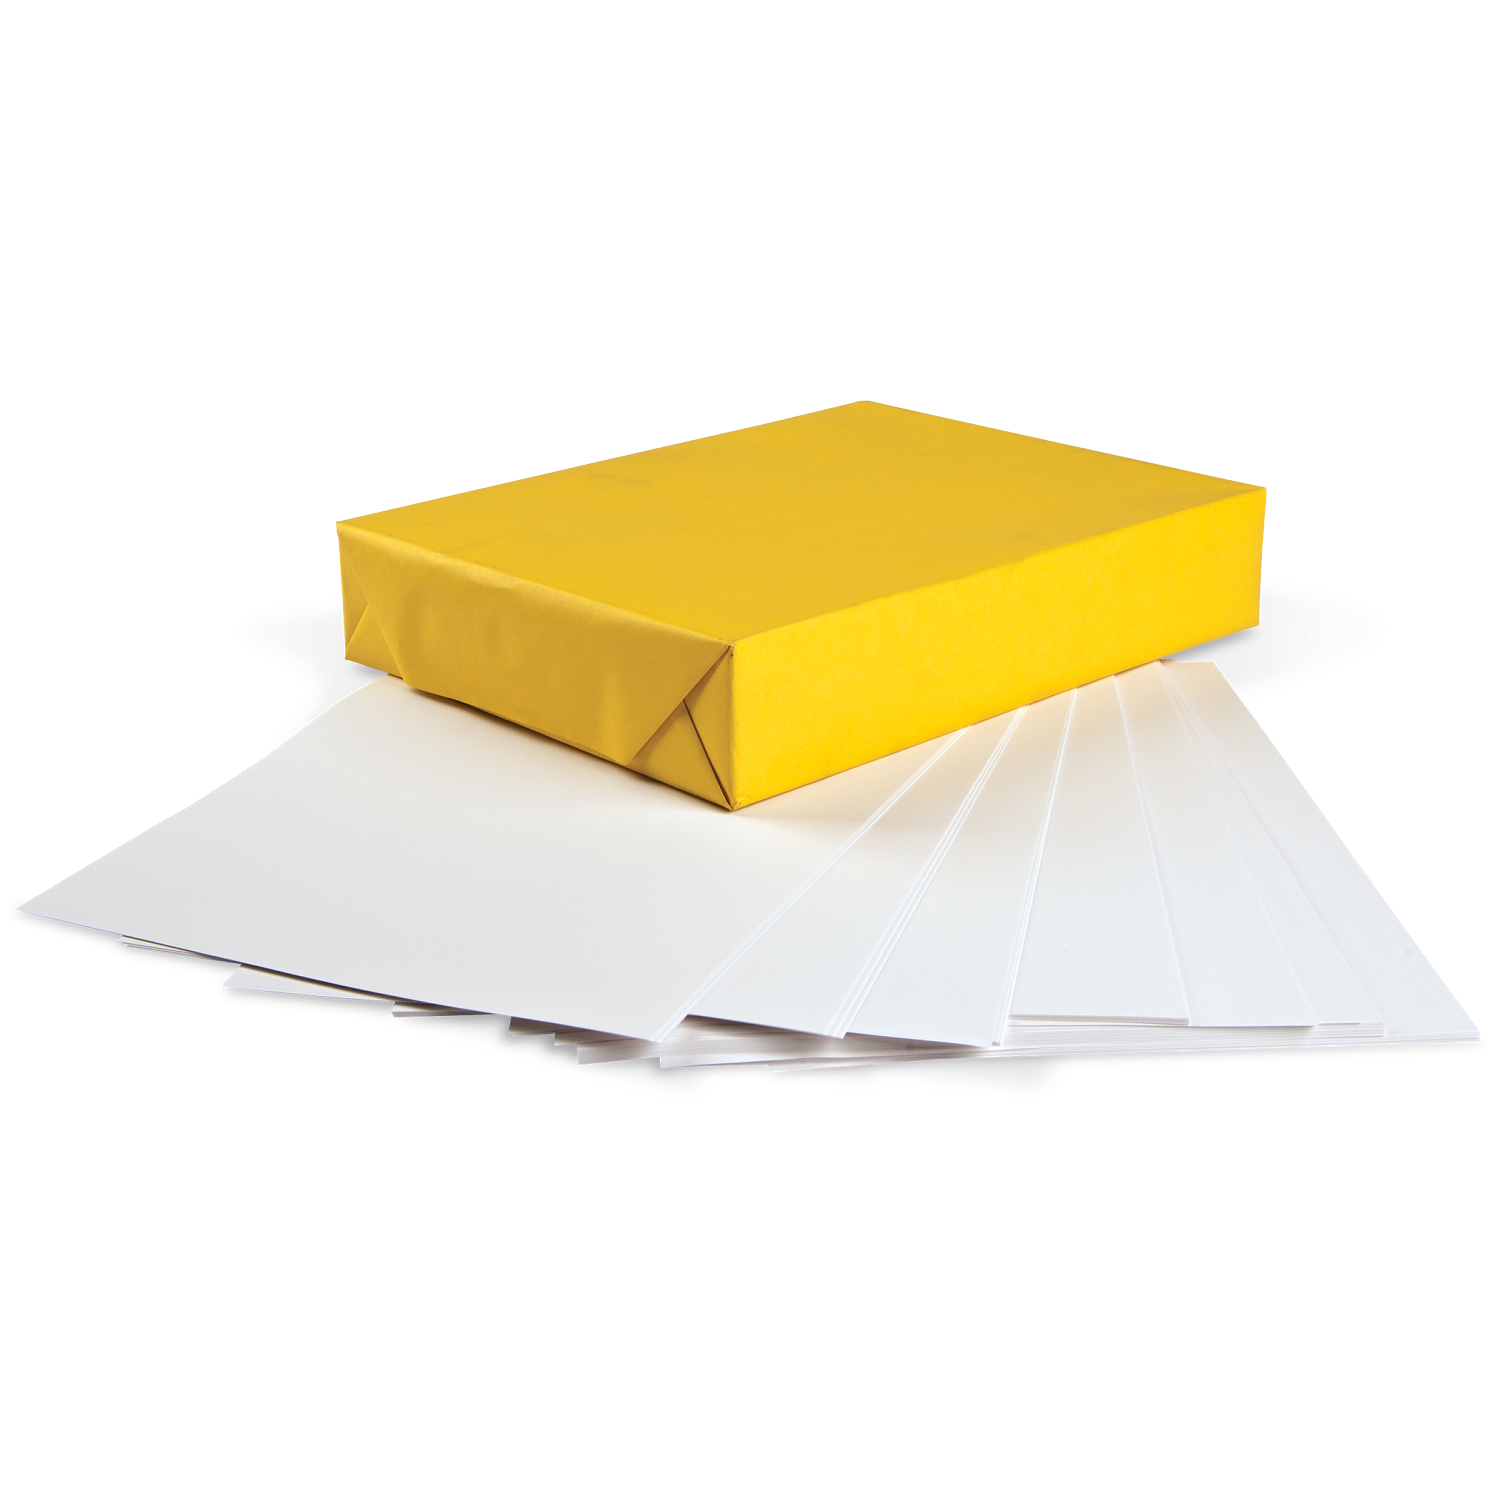 Acid free tissue paper, Lightning Packaging, white tissue paper